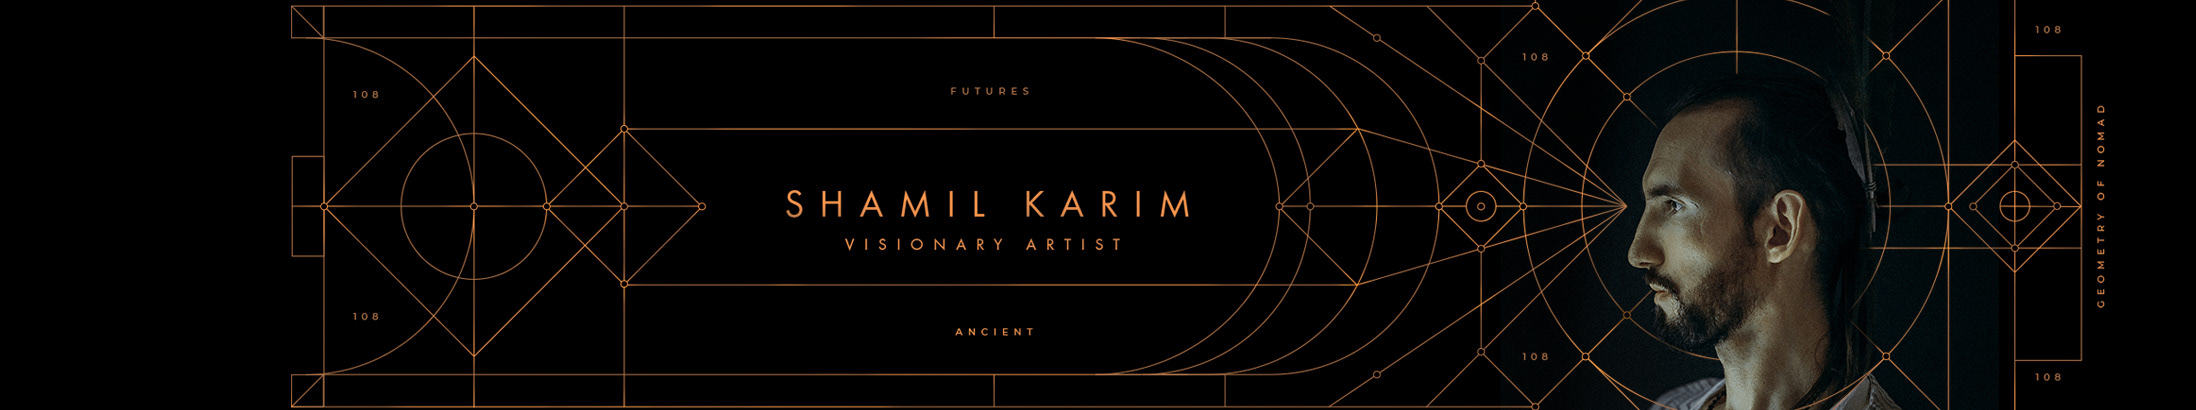 Shamil Karim's profile banner